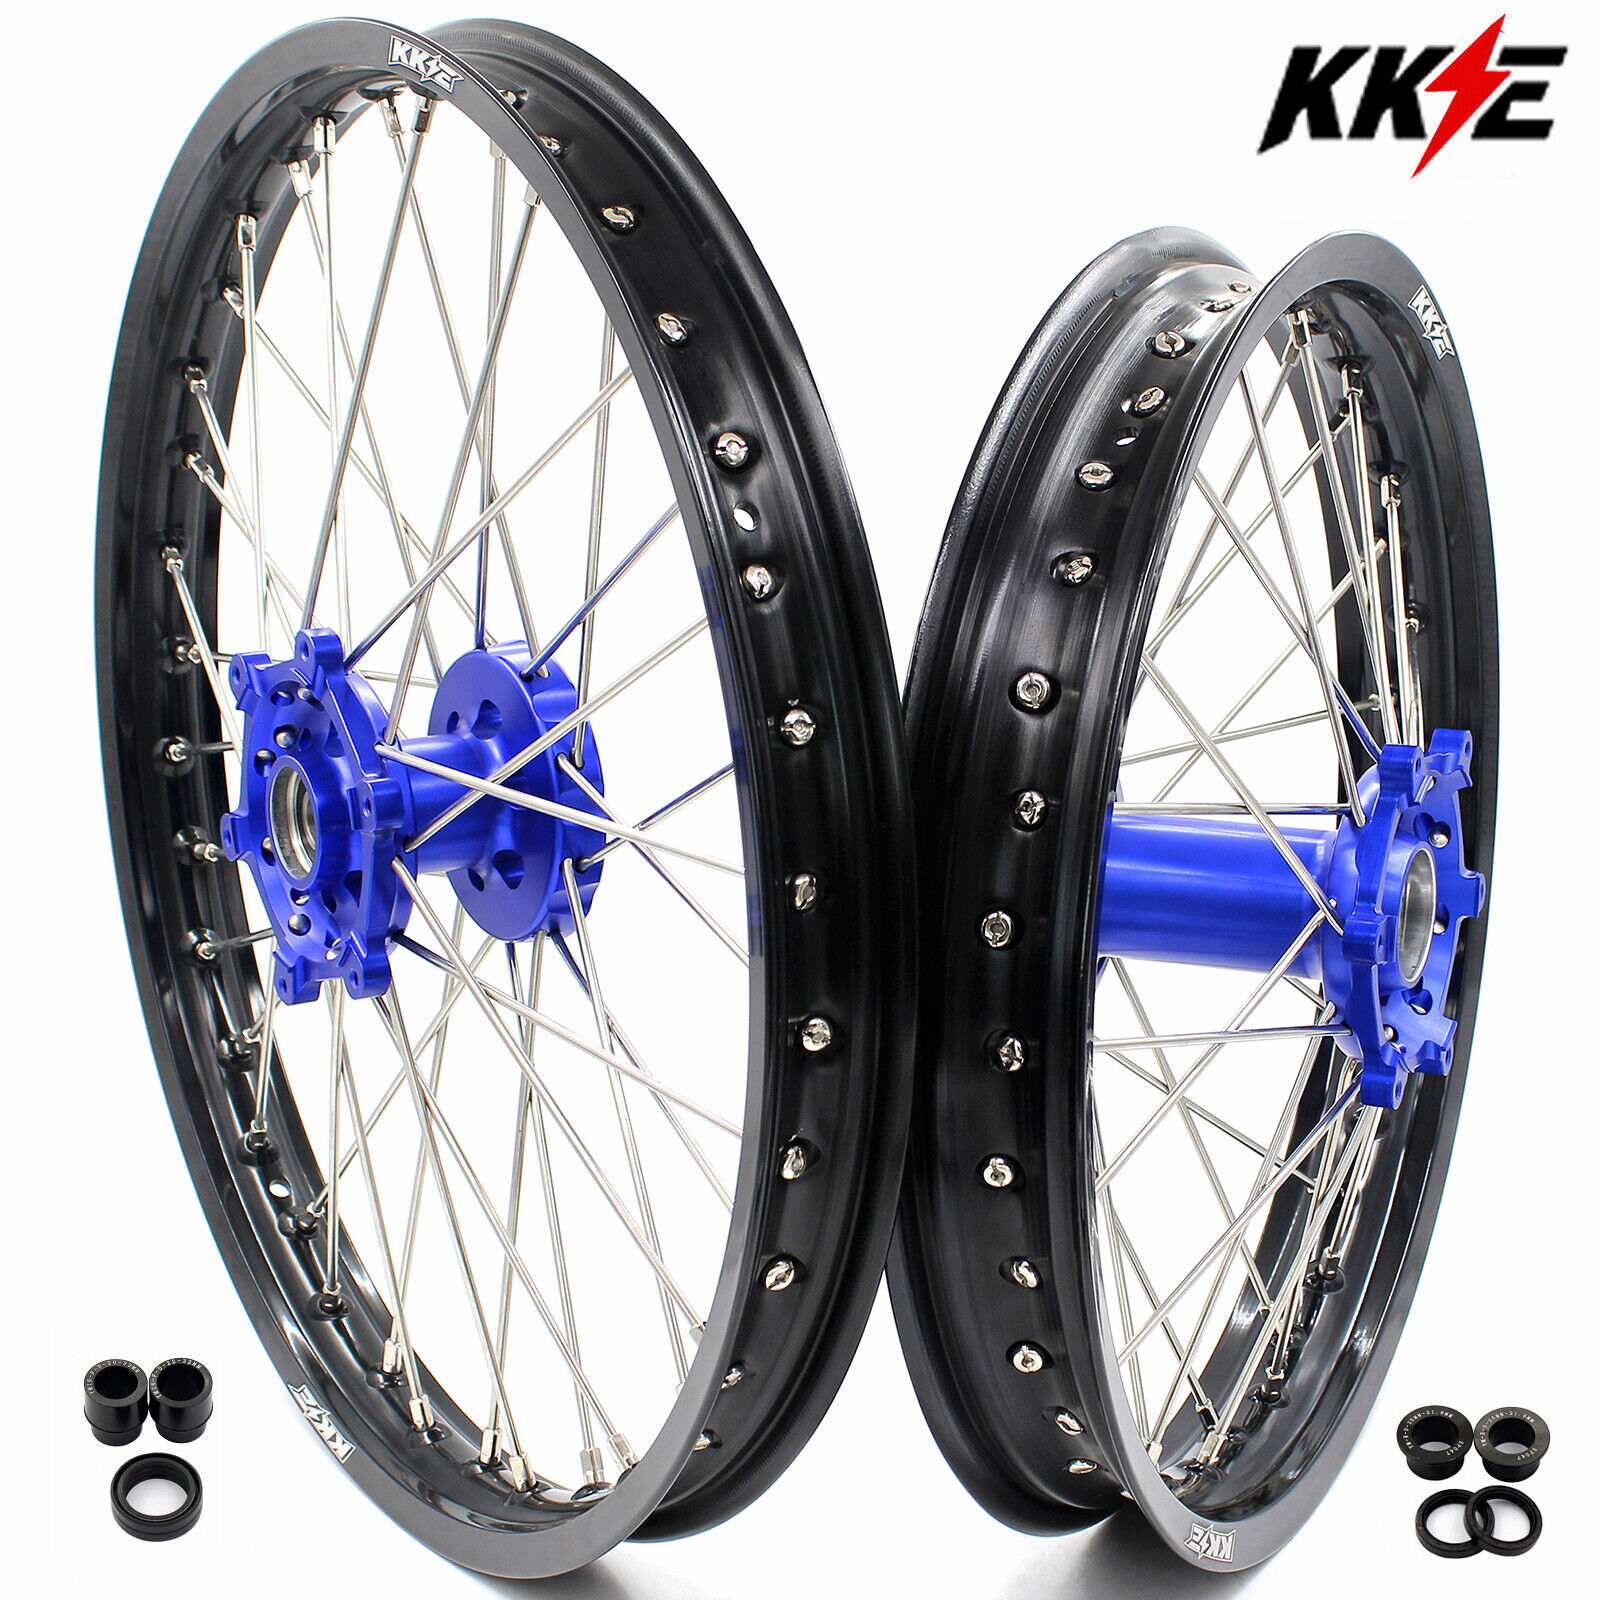 KKE 21/18 CNC Wheels For Yamaha WR250R 2008-2022 Enduro Dirt Bike Spoke Rims Set